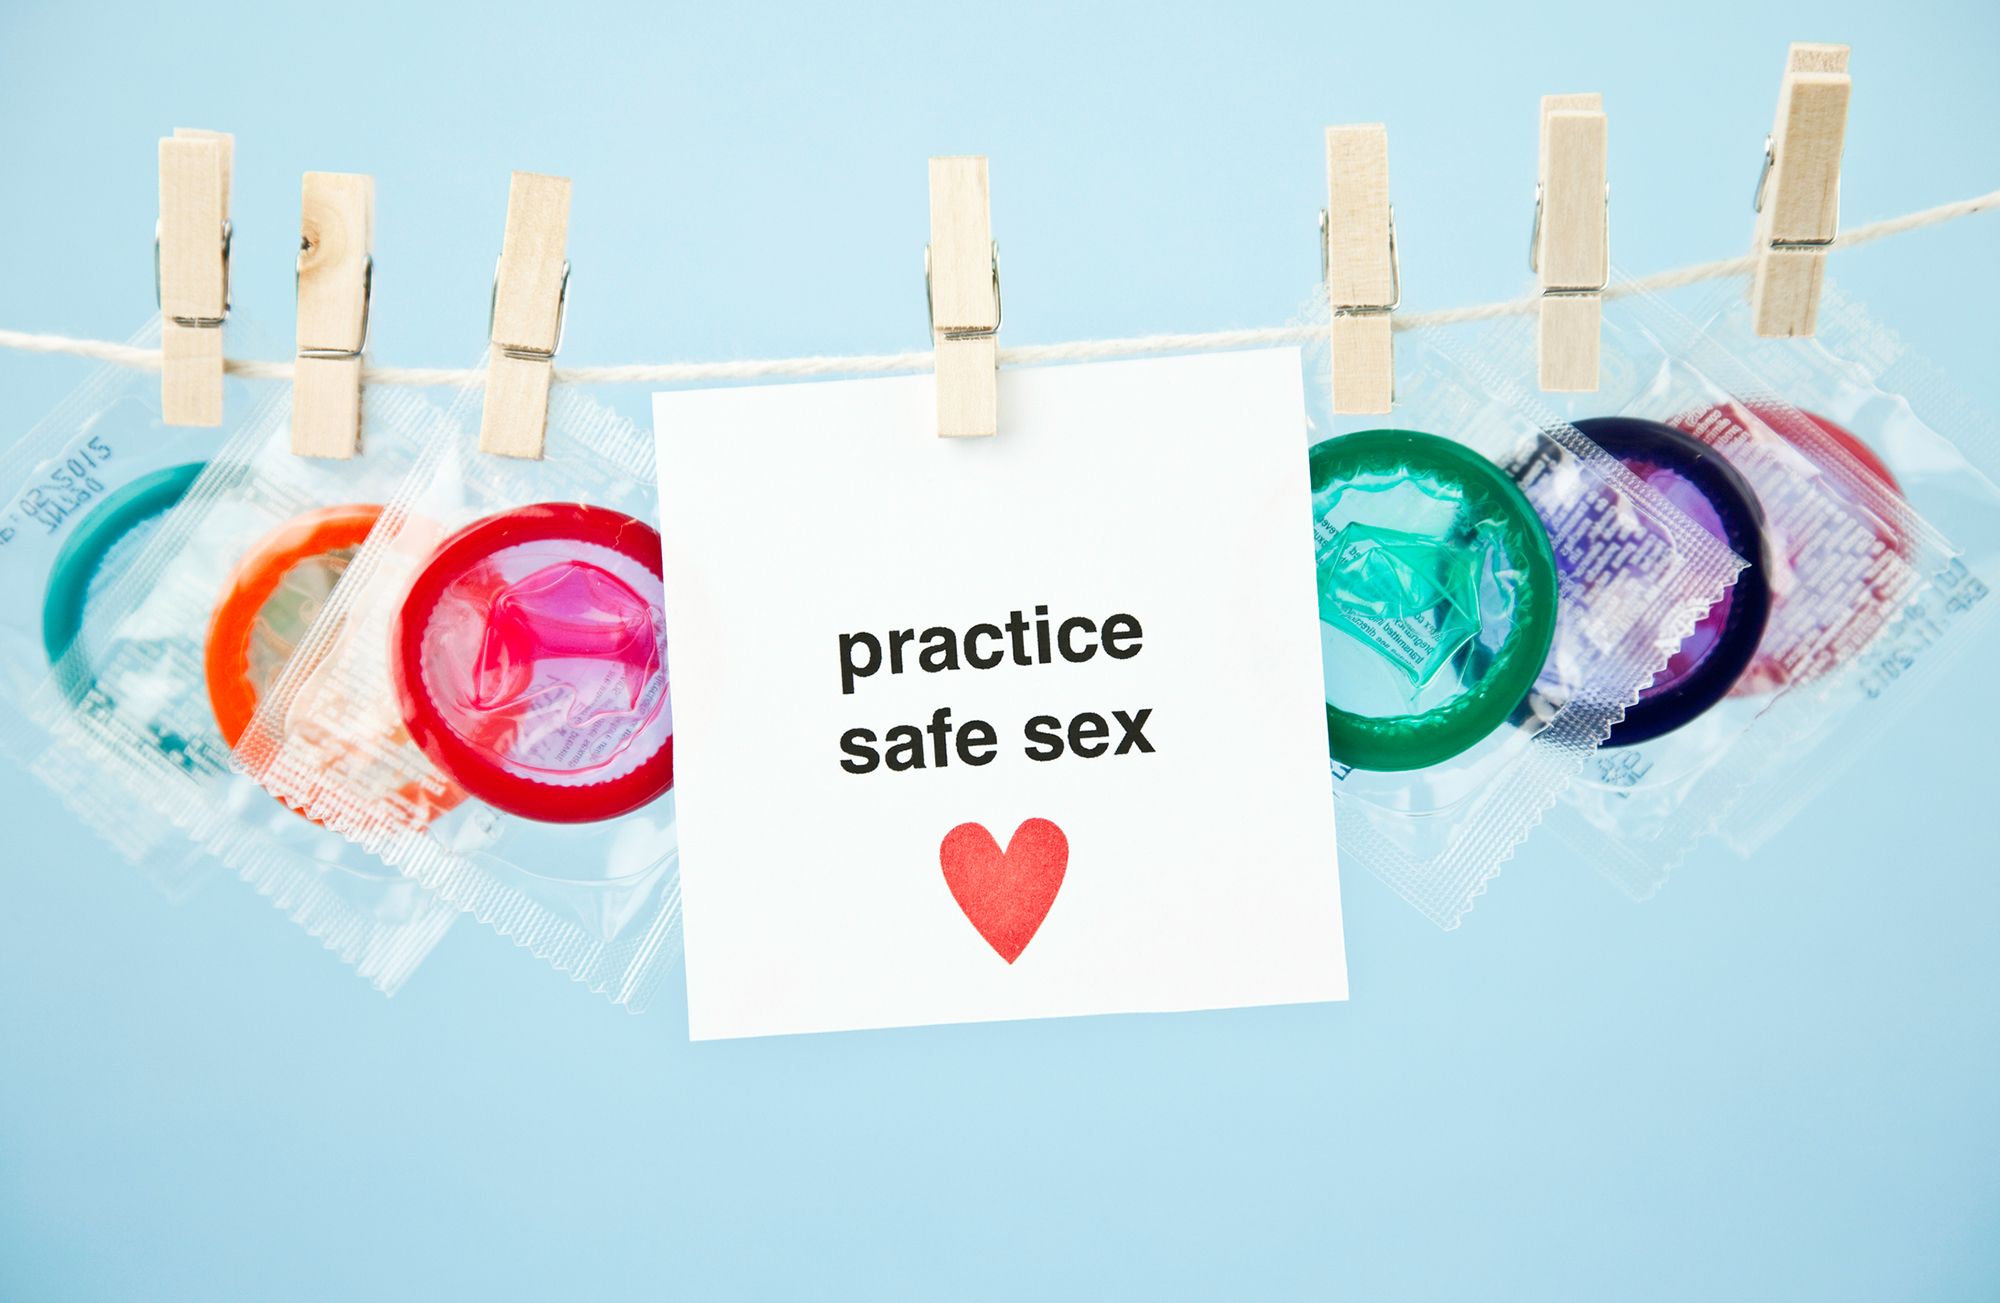 Wäscheleine, an der verschiedene Kondompackungen hängen